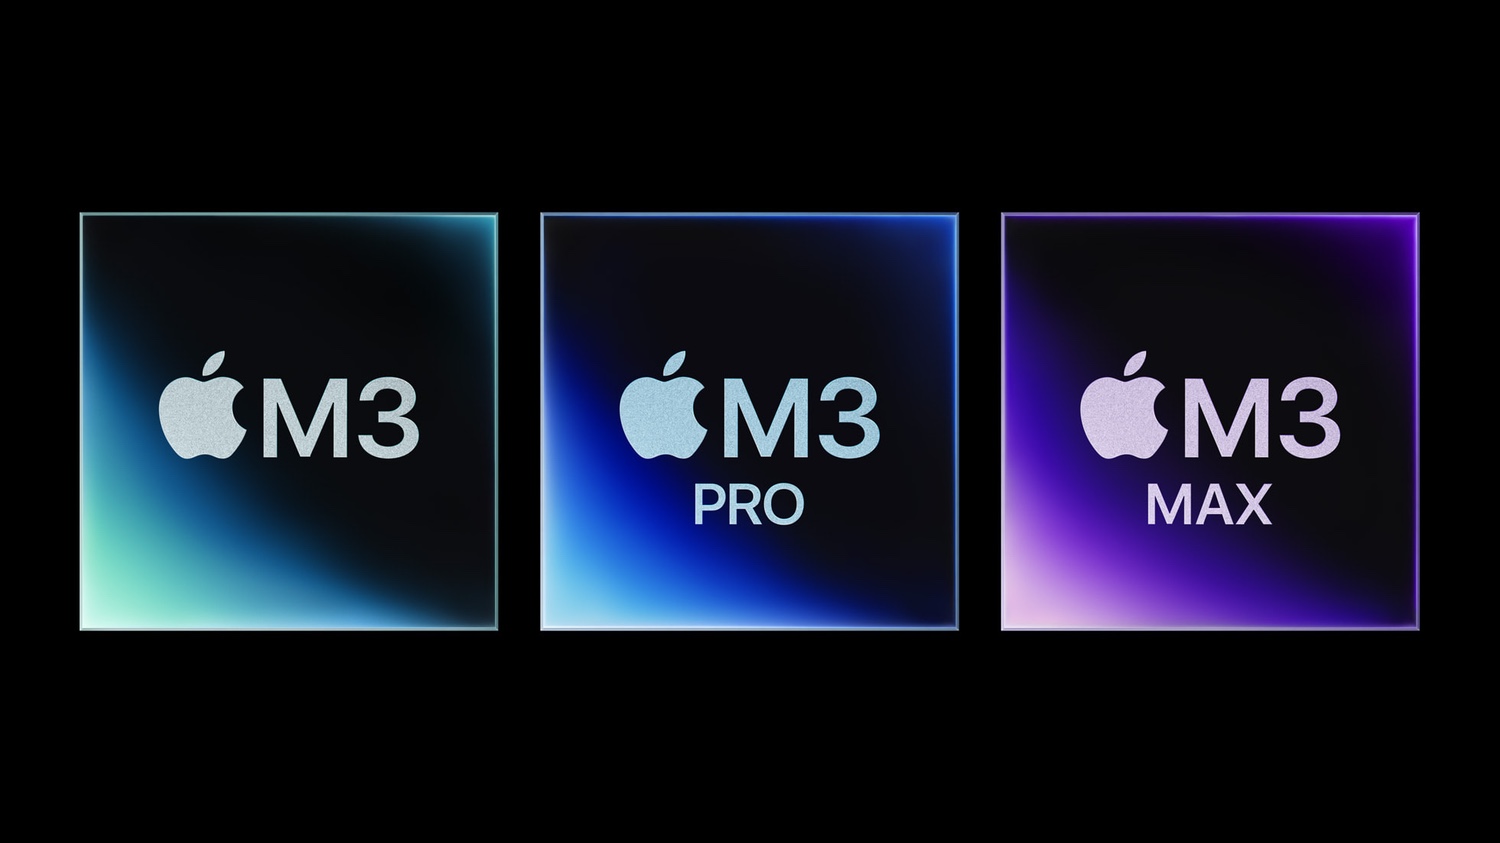 Better deals on M3 iMac versus Apple refurbished